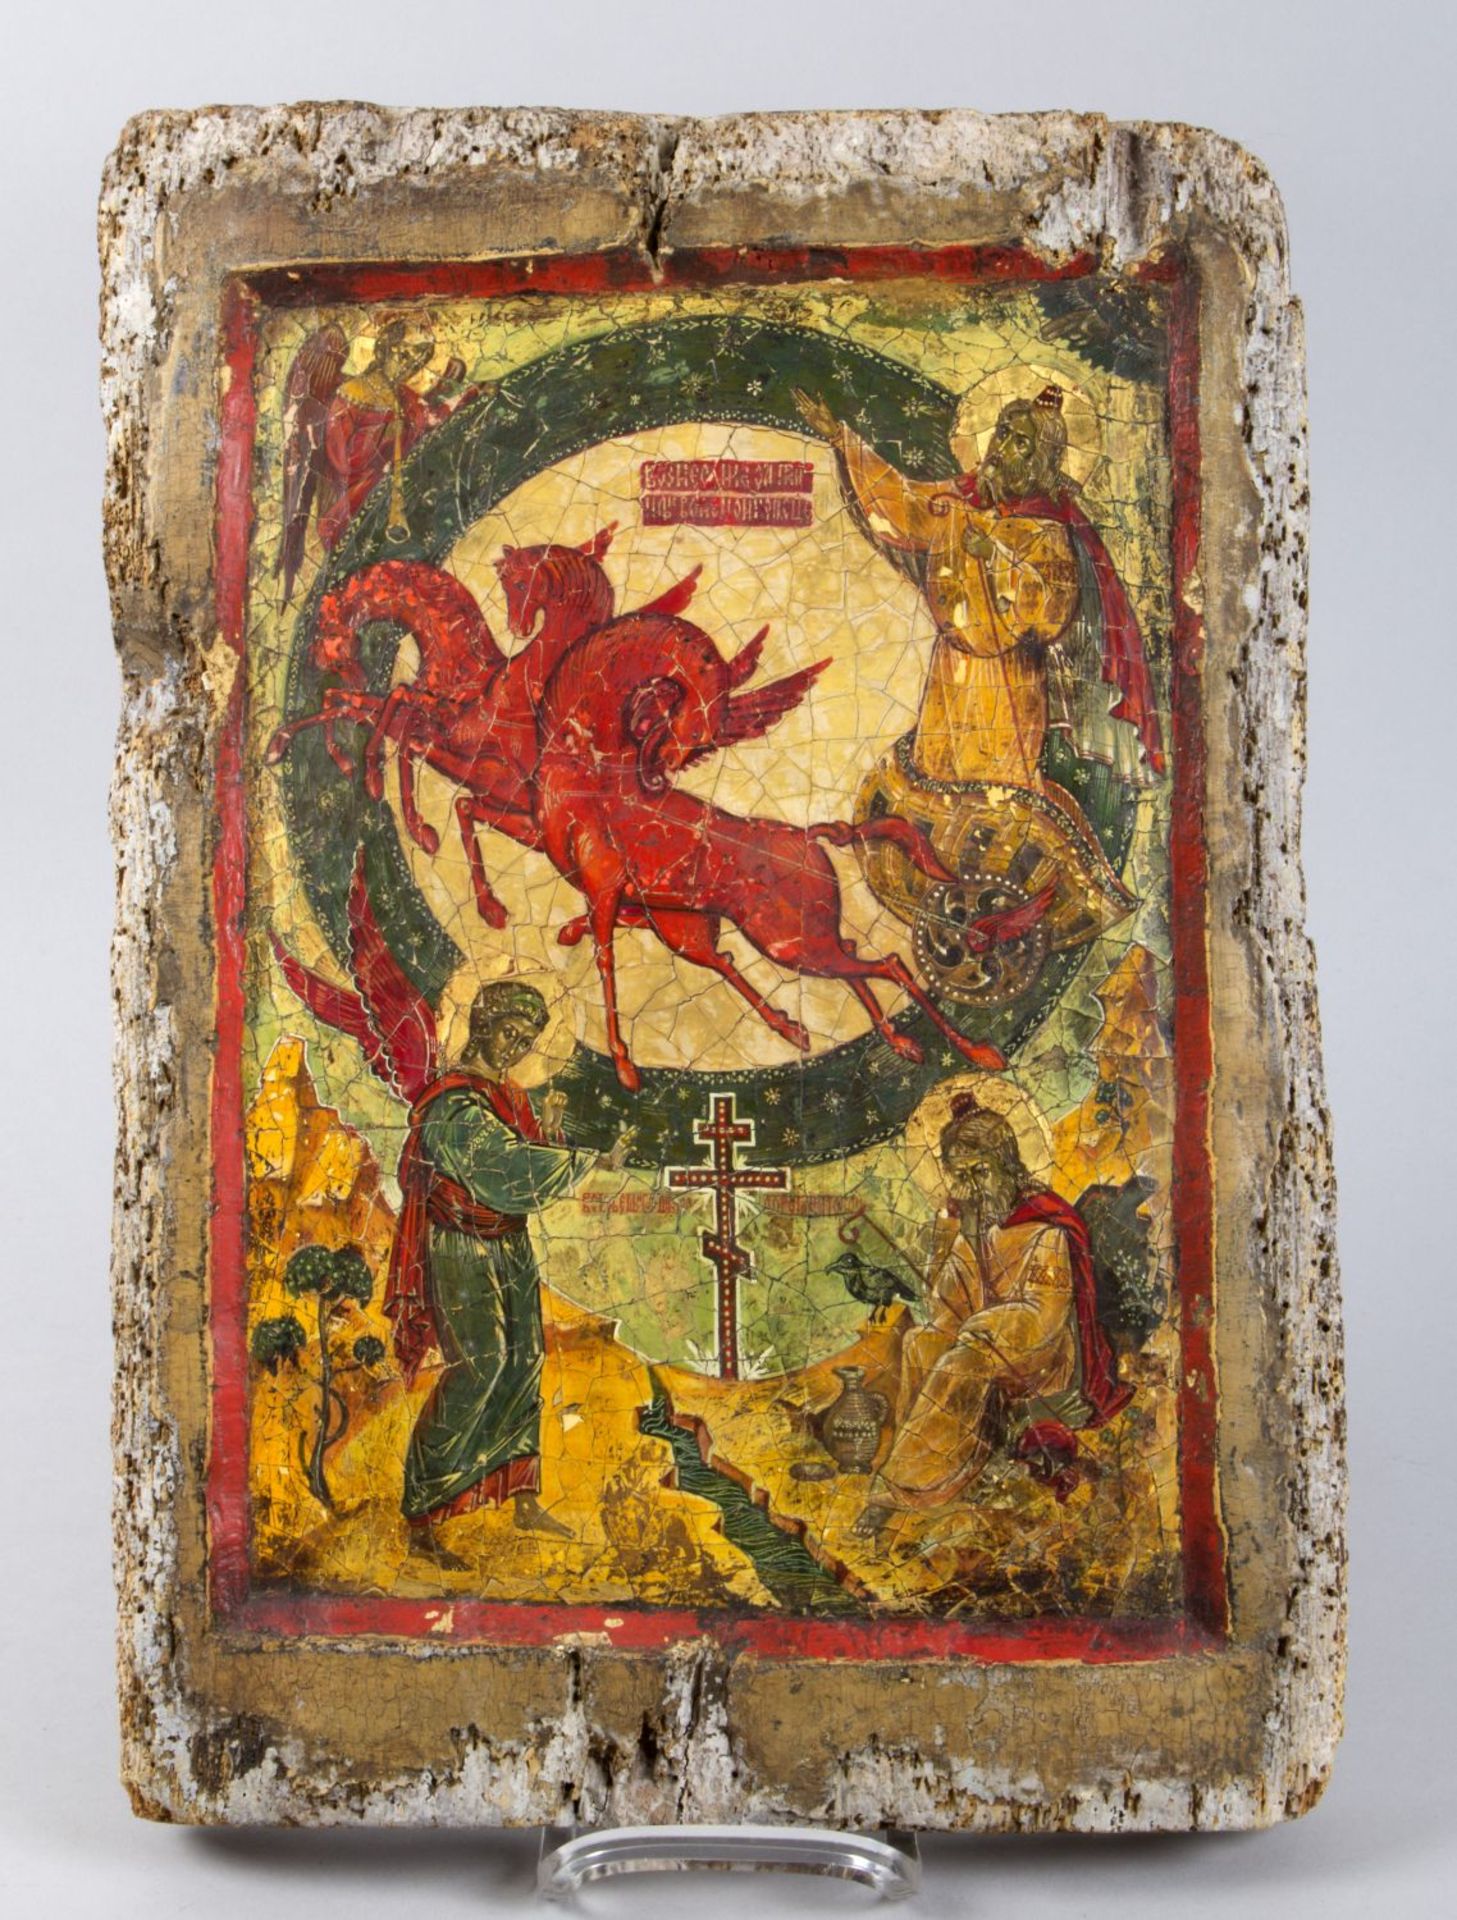 Ikone Der Prophet Elija im feurigen Streitwagen. Tempera auf Holz. Russland, wohl 20. Jh. 45 x 33 cm